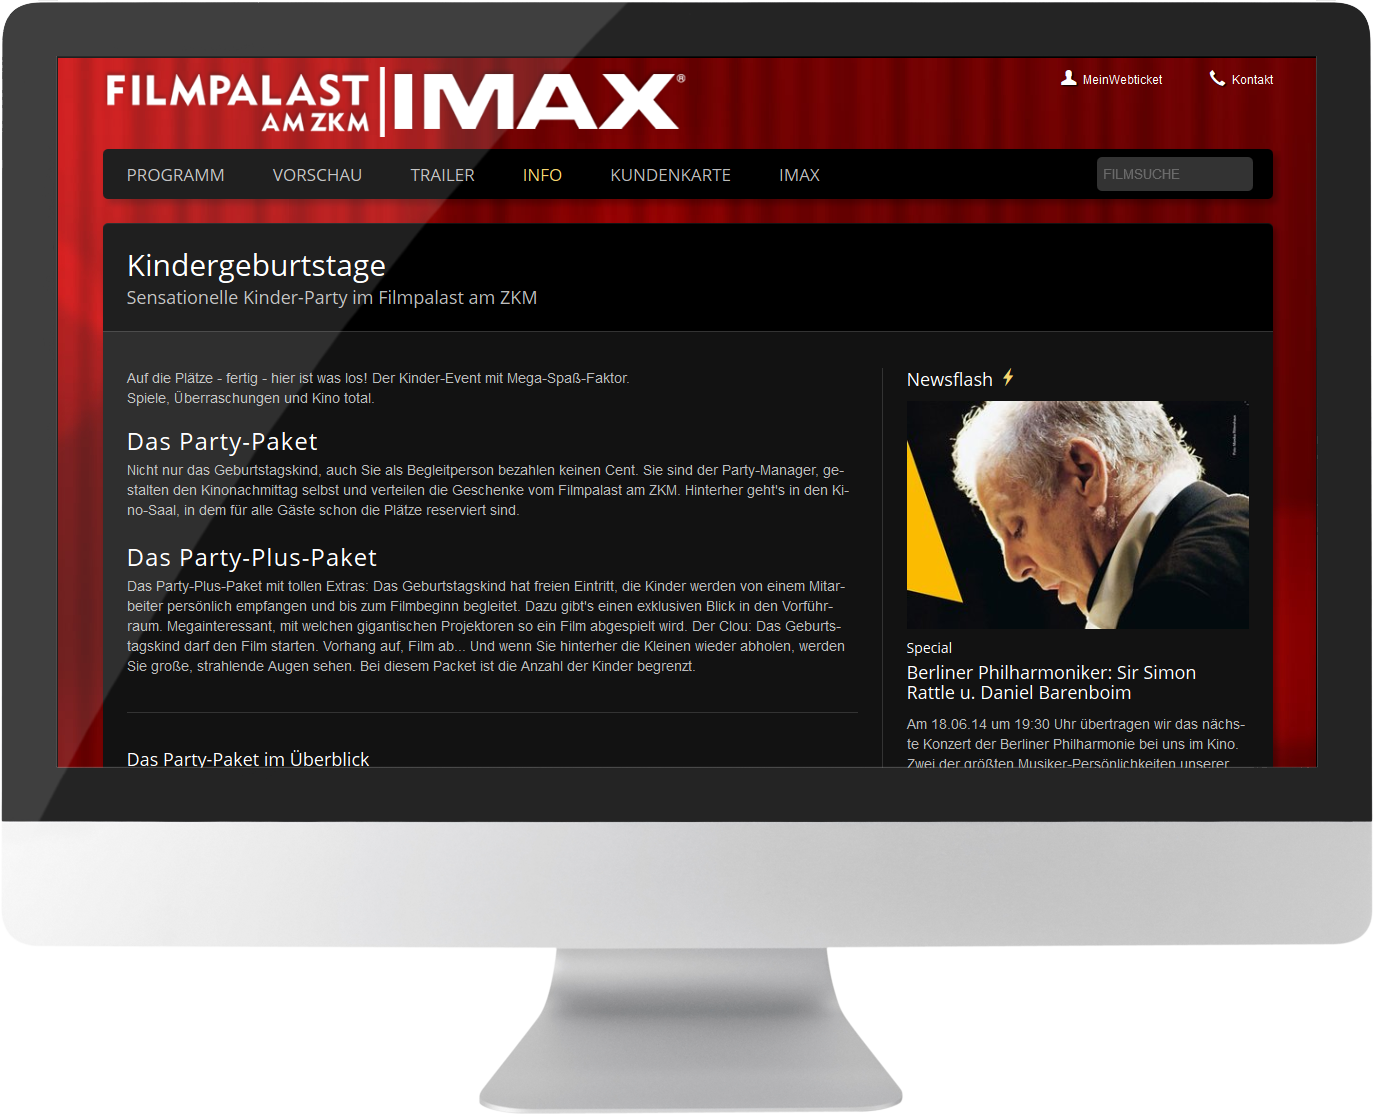 Bildmontage Filmpalast am ZKM GmbH & Co. KG 2-spaltige Textseite